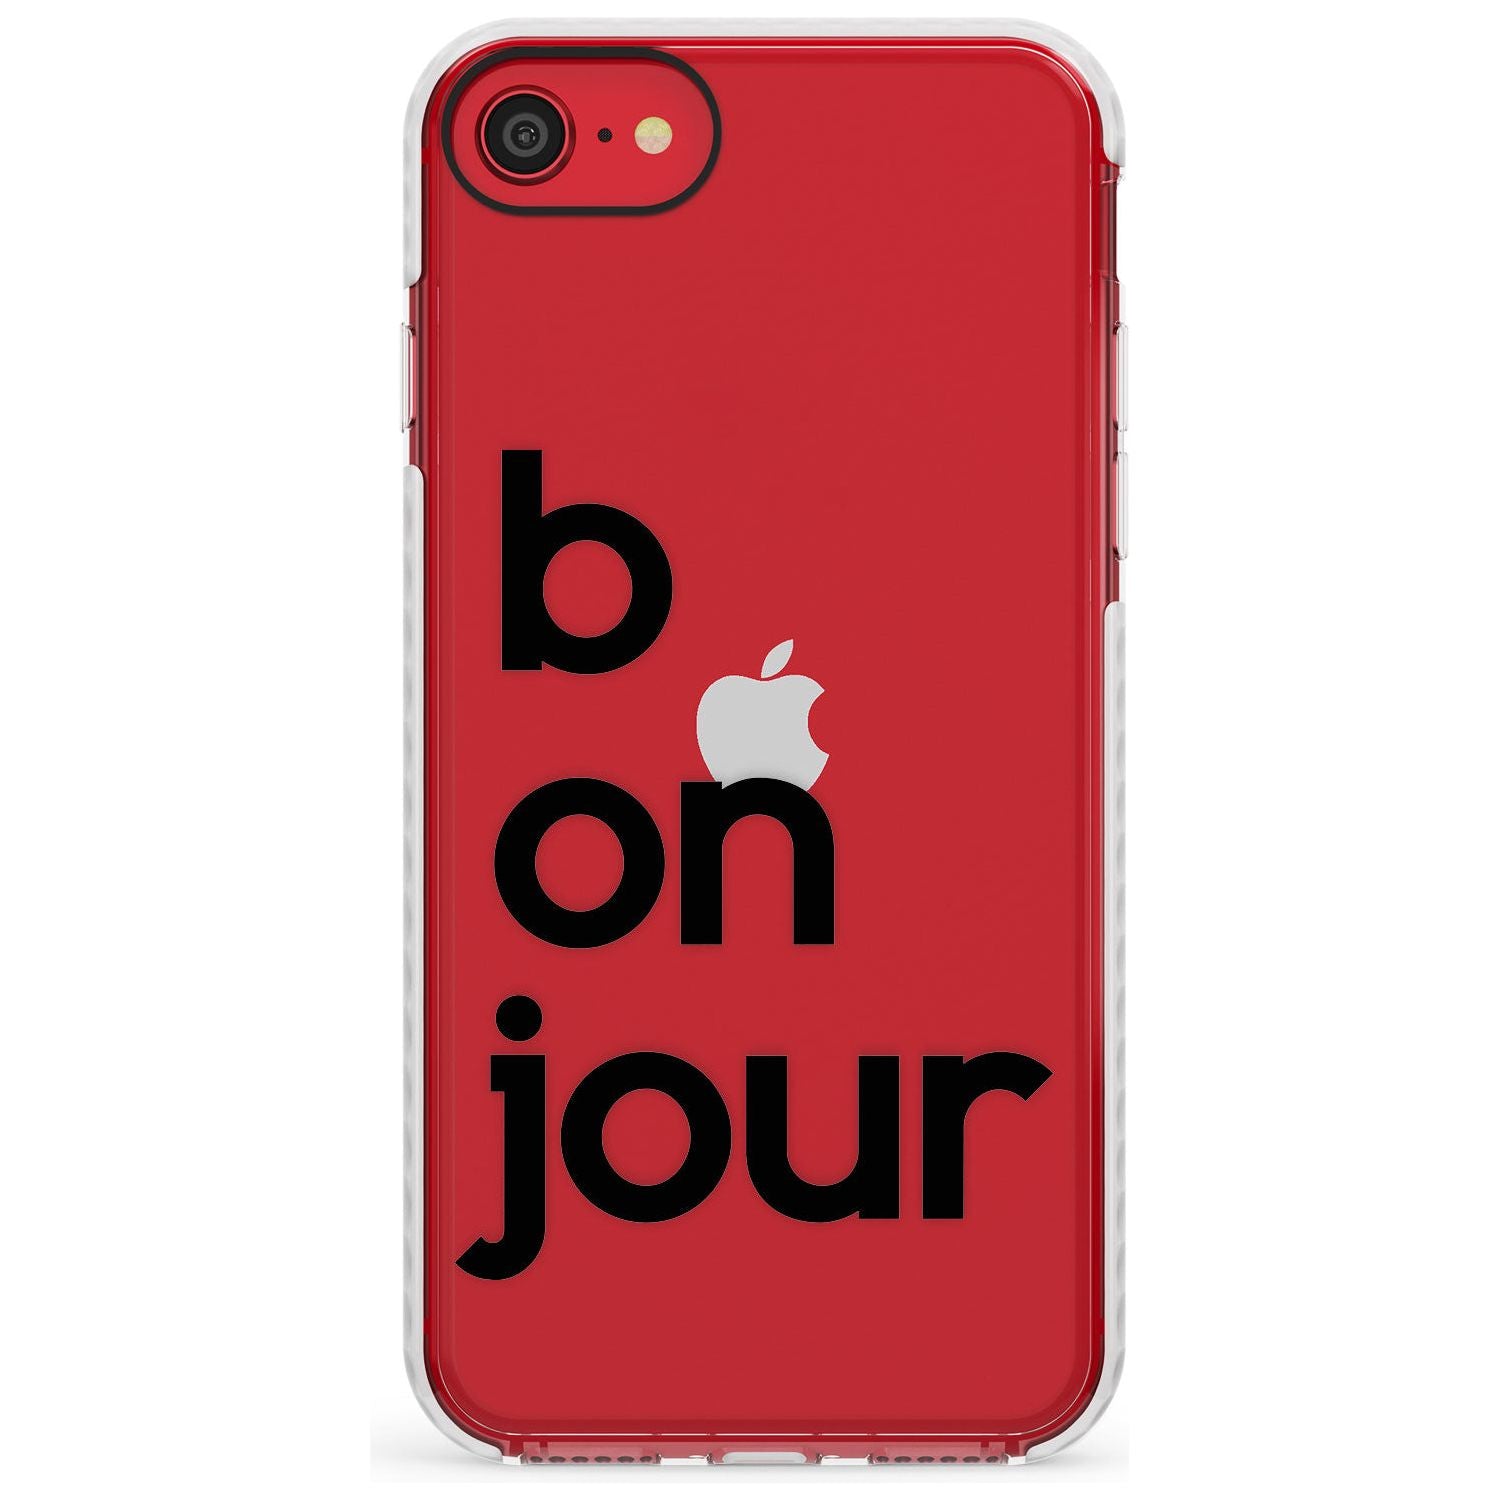 Bonjour Slim TPU Phone Case for iPhone SE 8 7 Plus